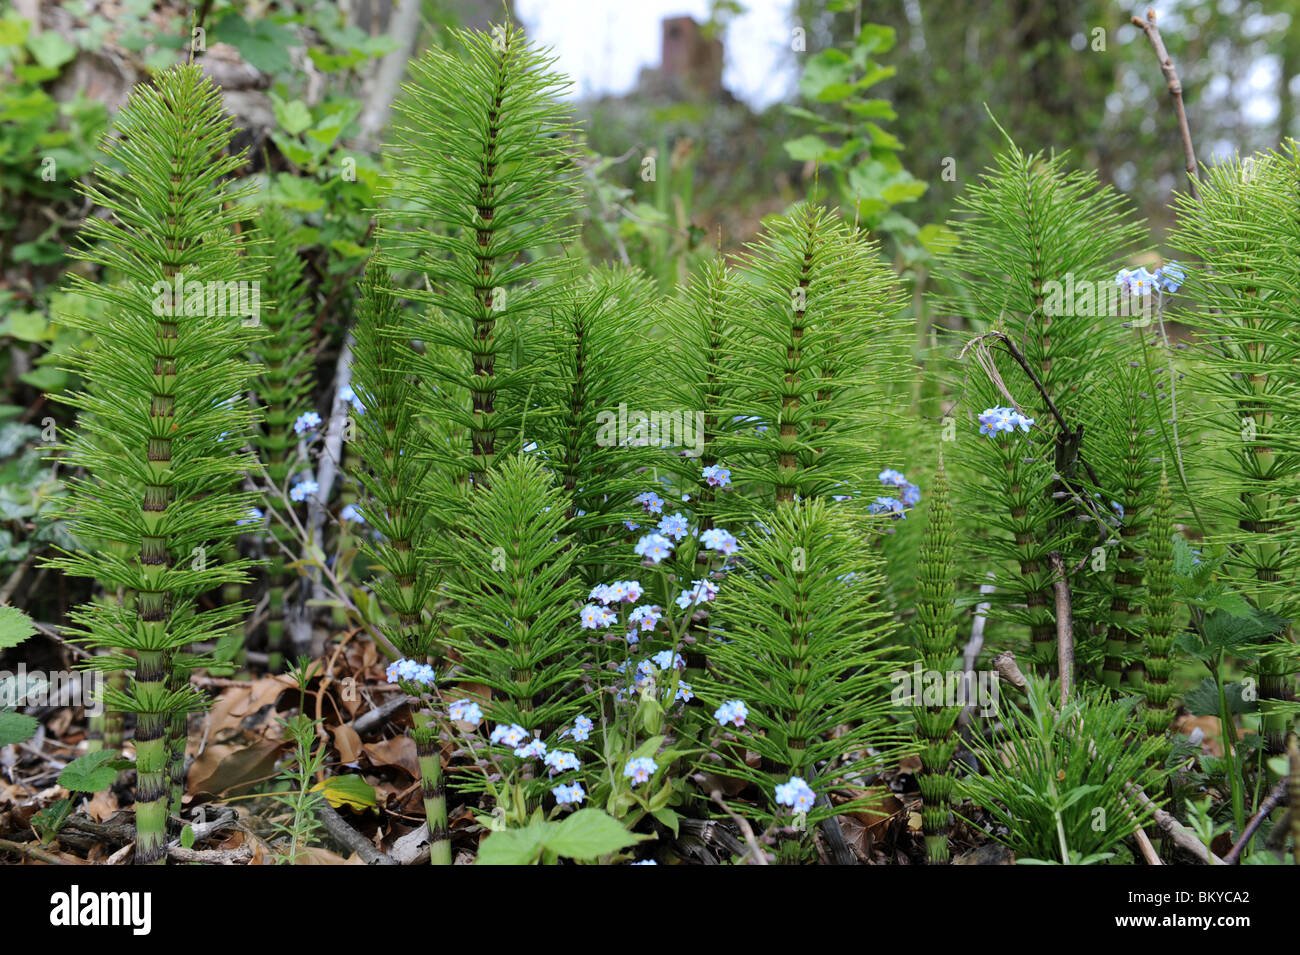 La prêle ou Mare's tail (Equisetum arvense) une espèce de mauvaises herbes vivaces à racines profondes Banque D'Images